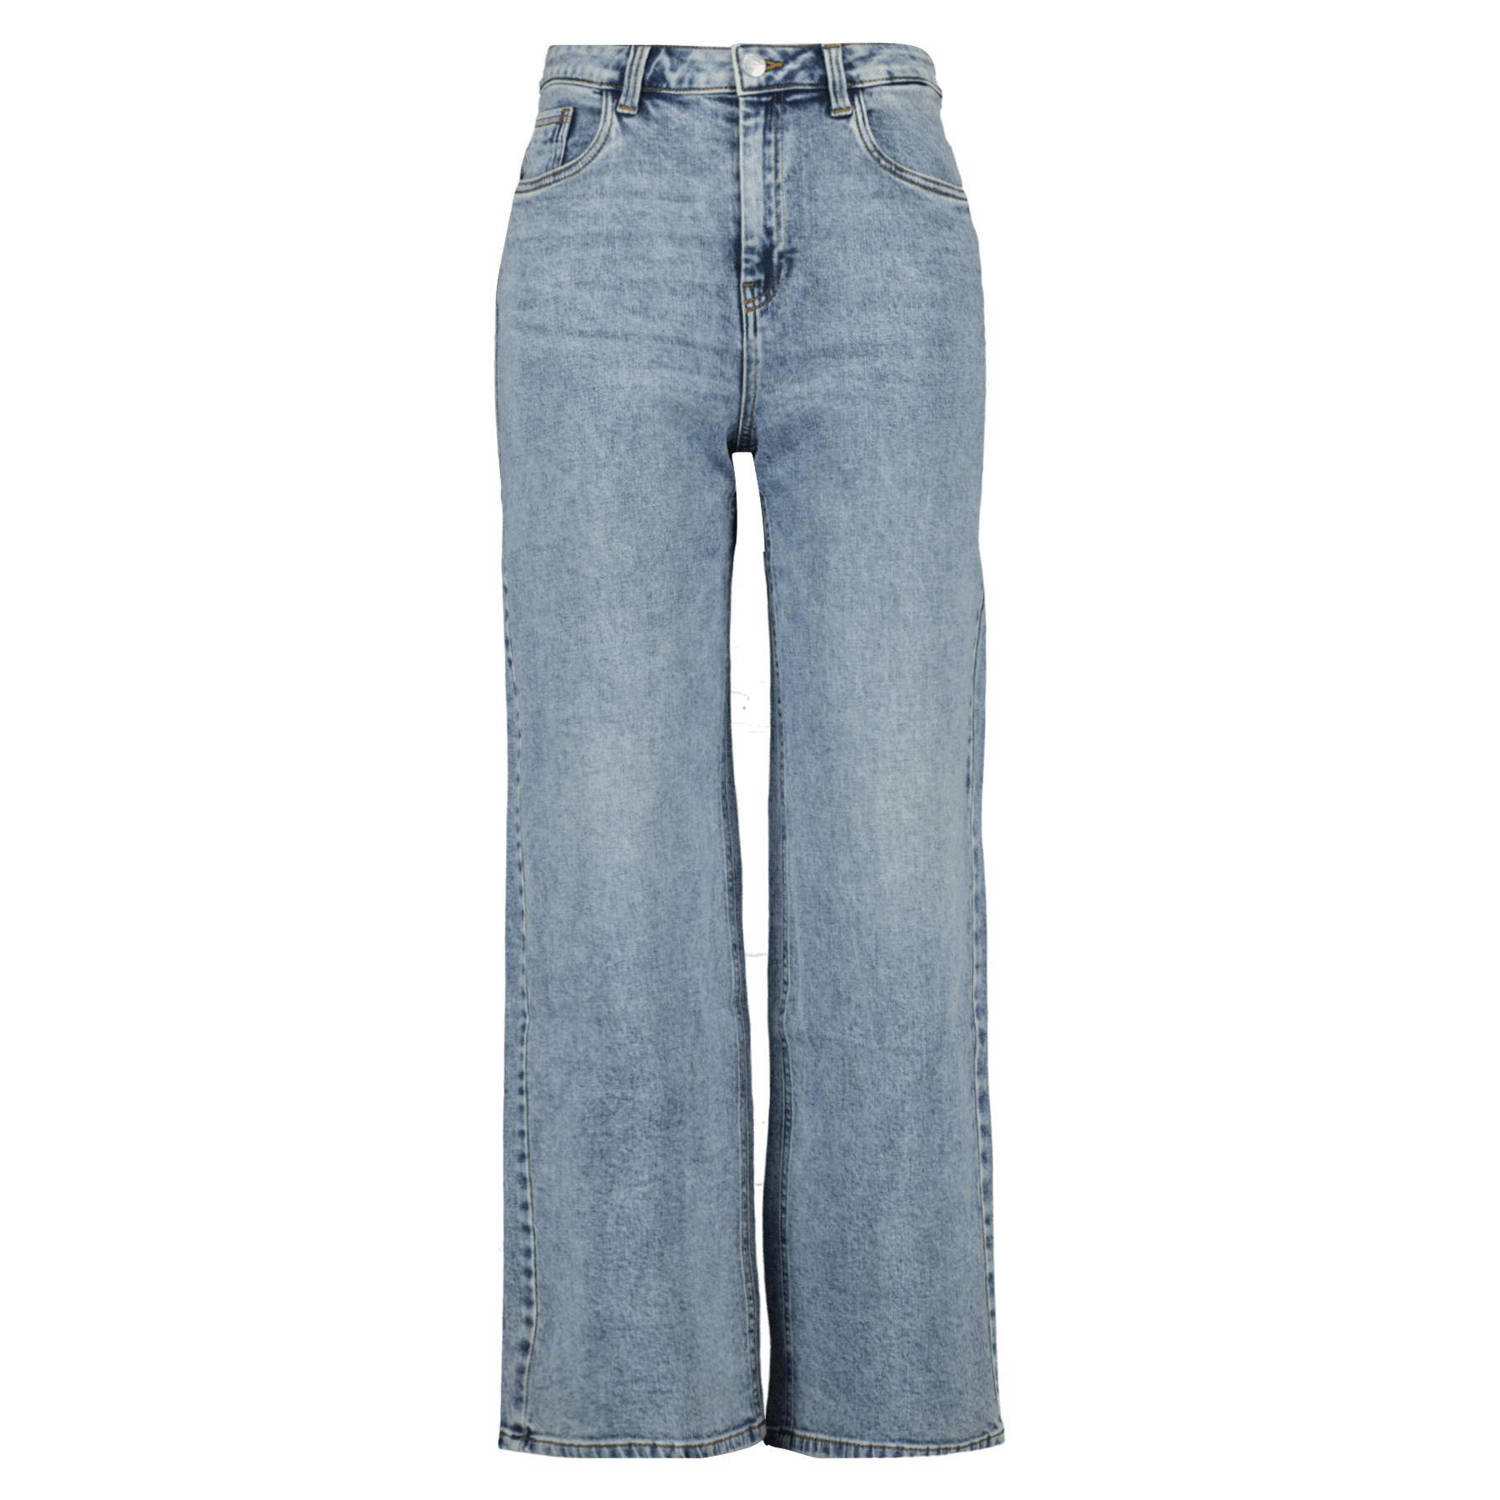 MS Mode high waist wide leg jeans light blue denim